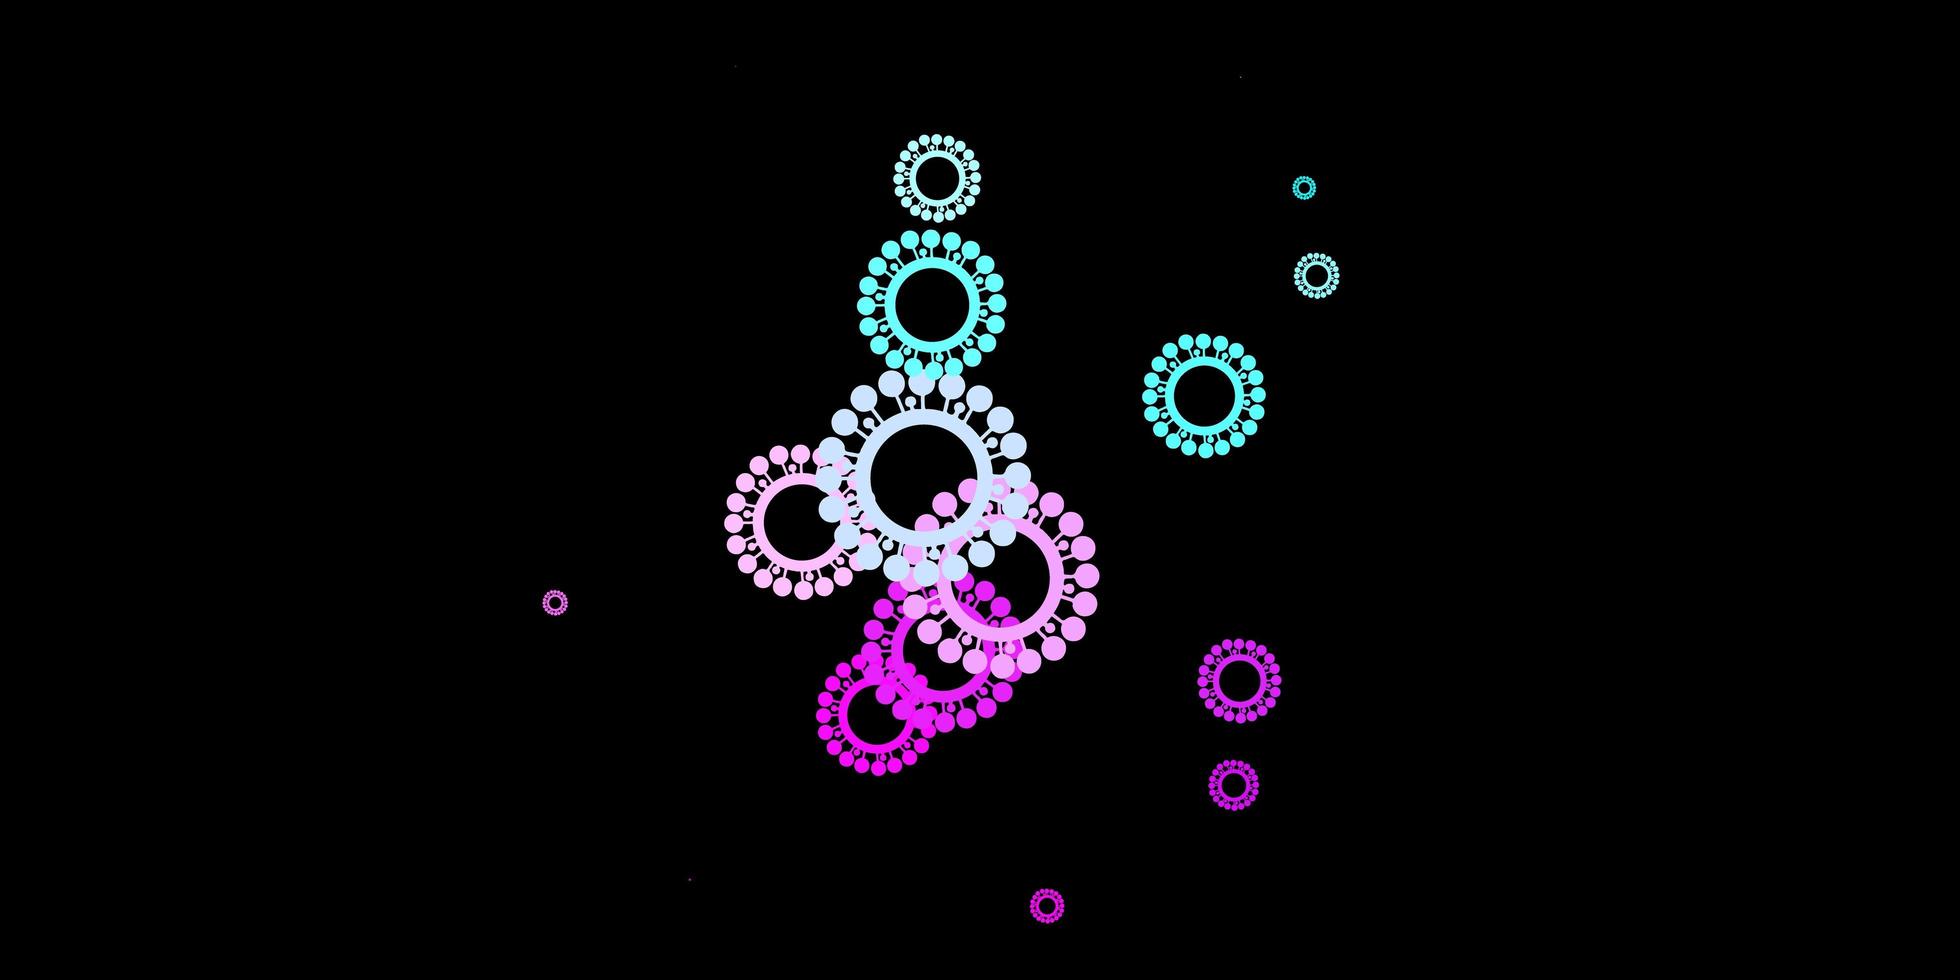 sfondo vettoriale rosa scuro, blu con simboli di virus